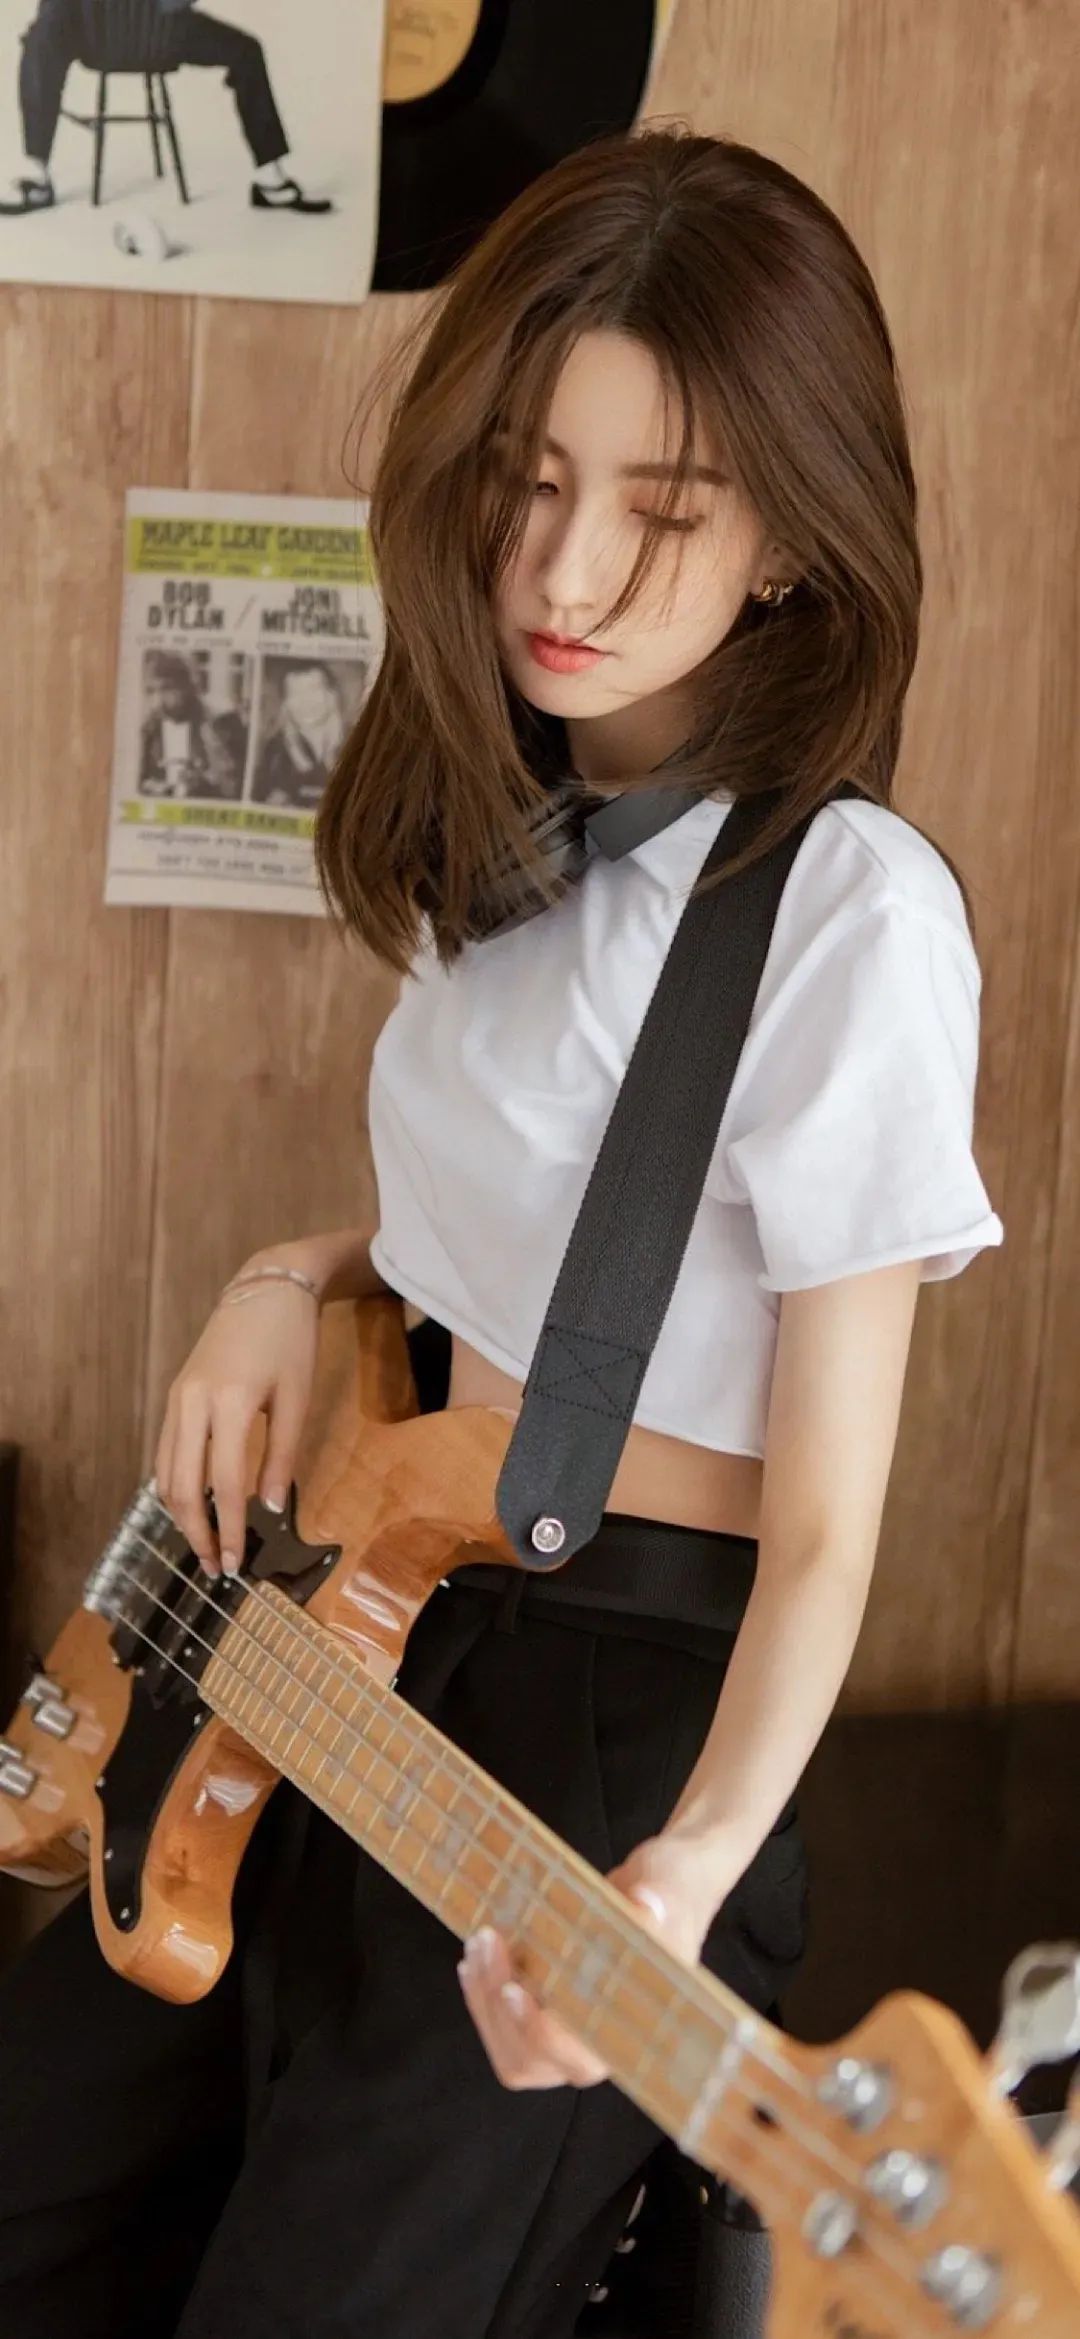 弹吉他的少女高清手机壁纸图片